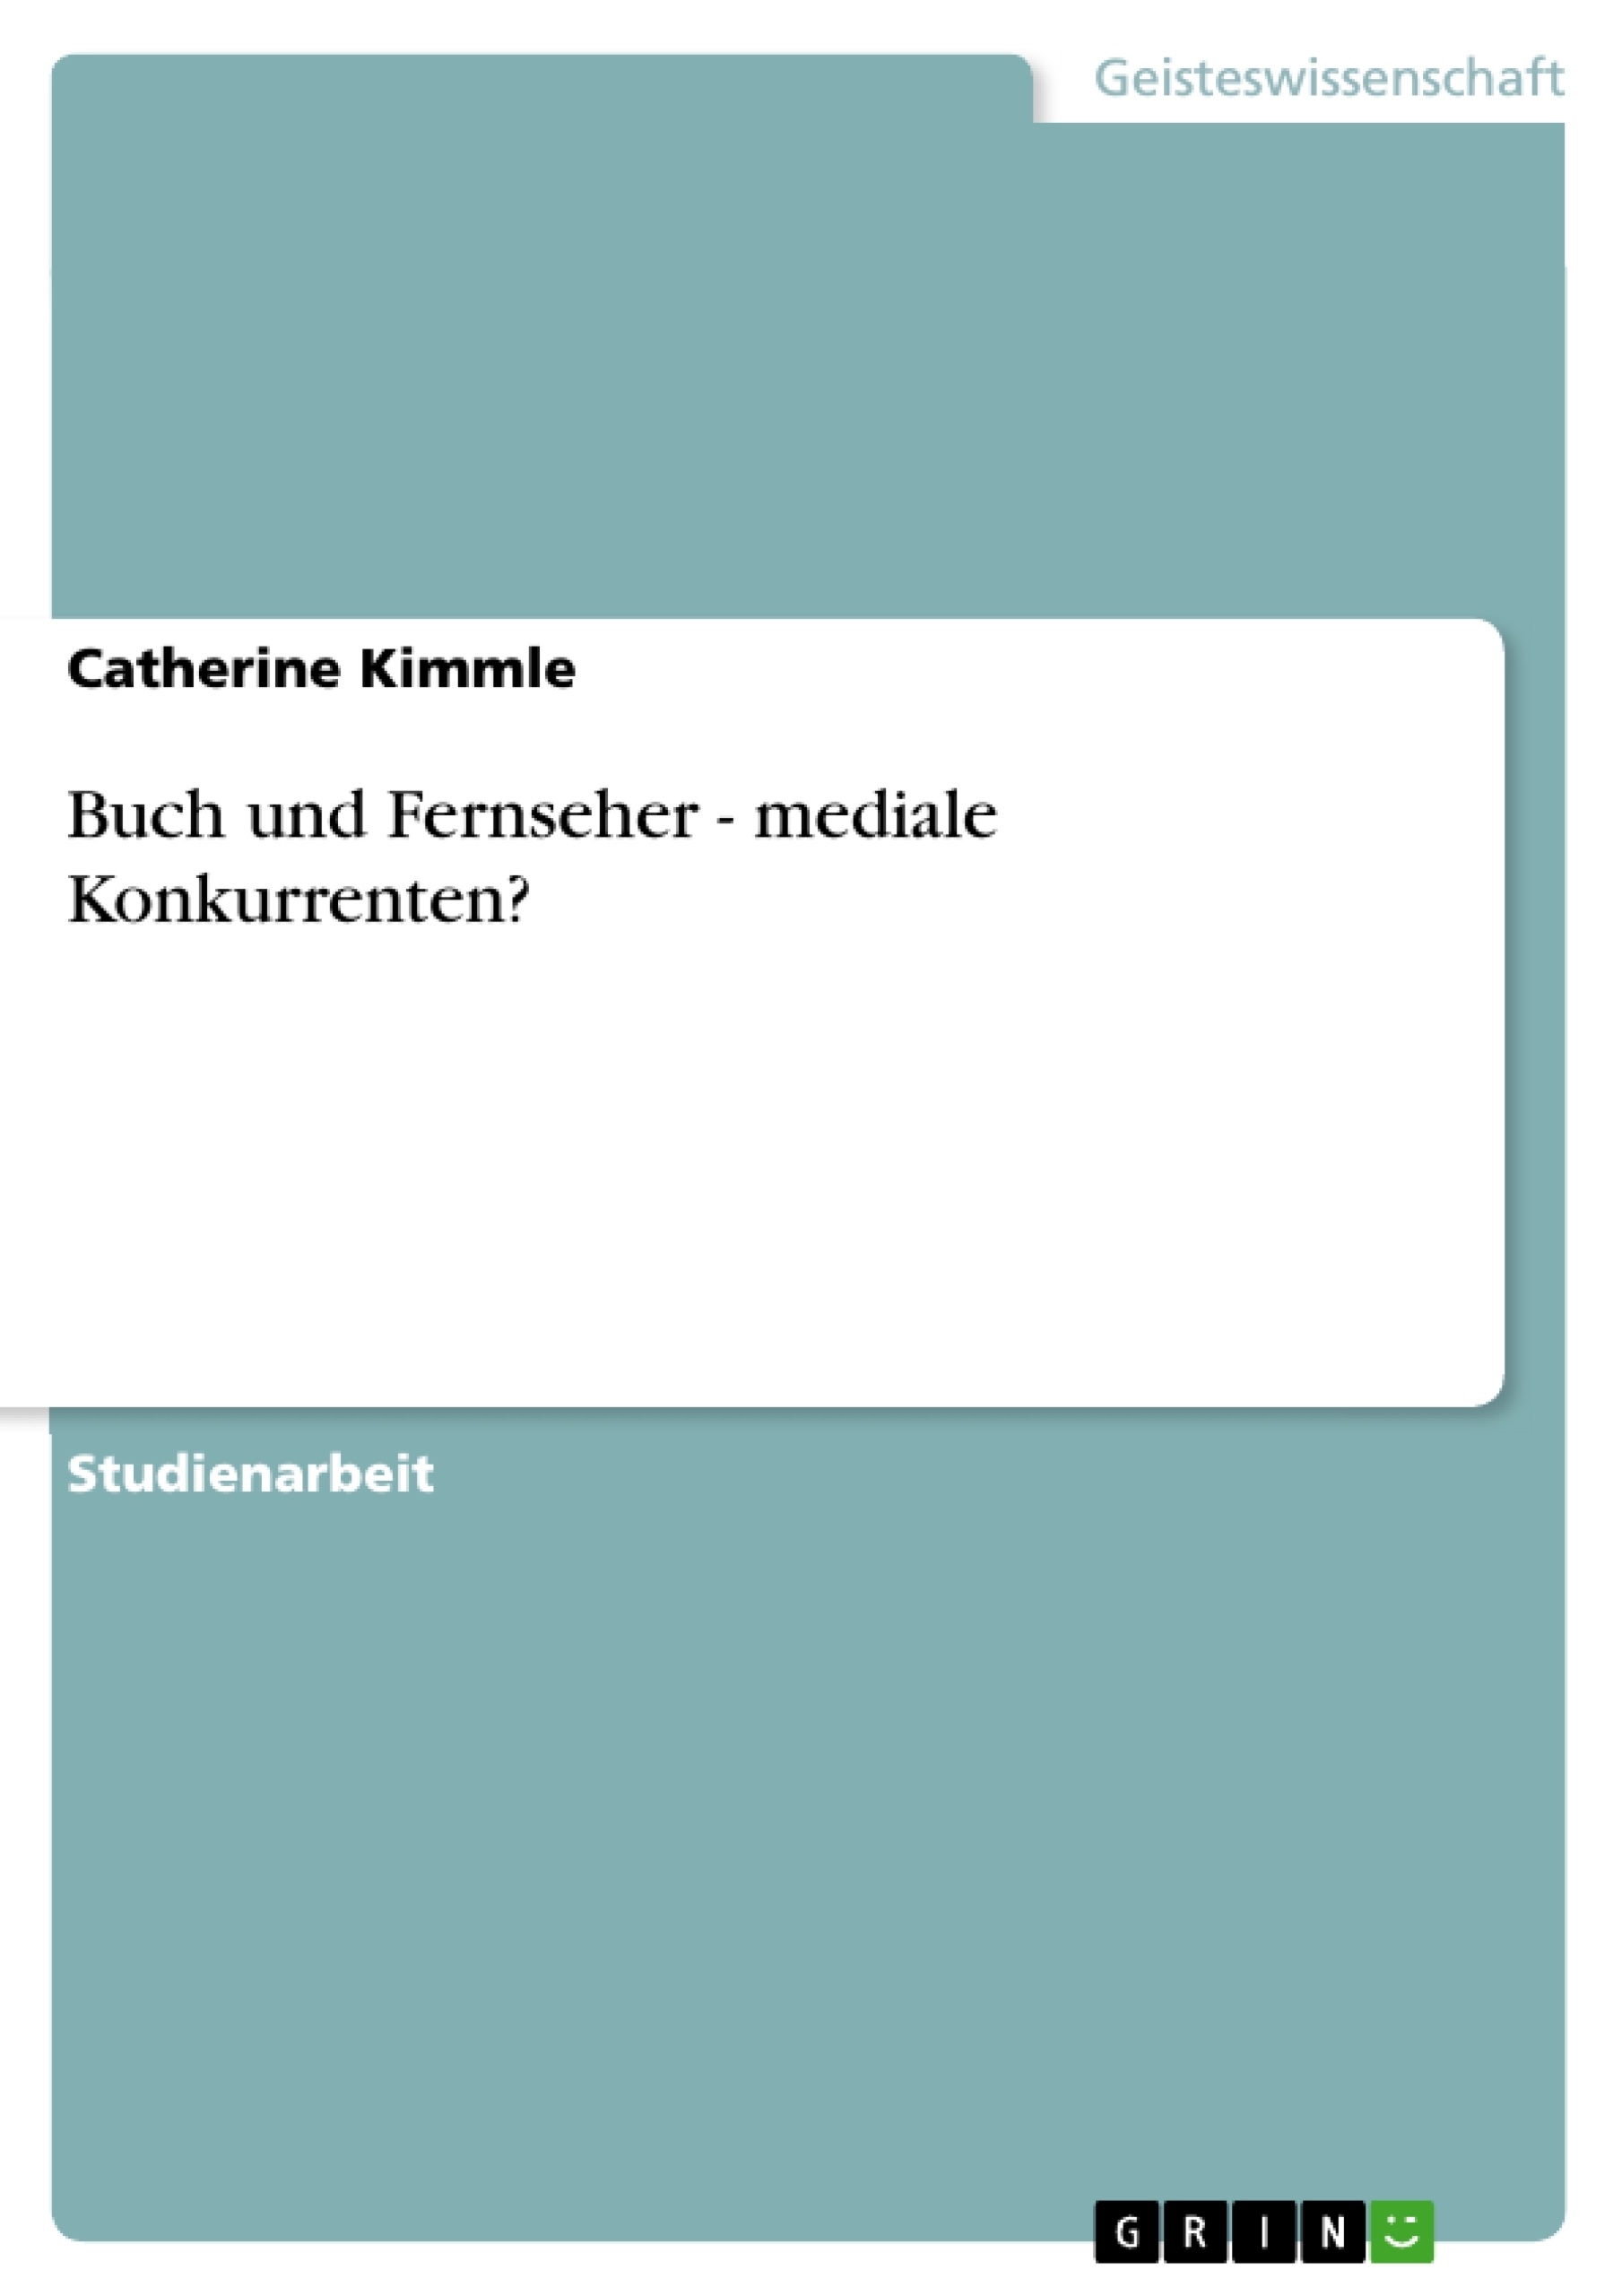 Title: Buch und Fernseher - mediale Konkurrenten?